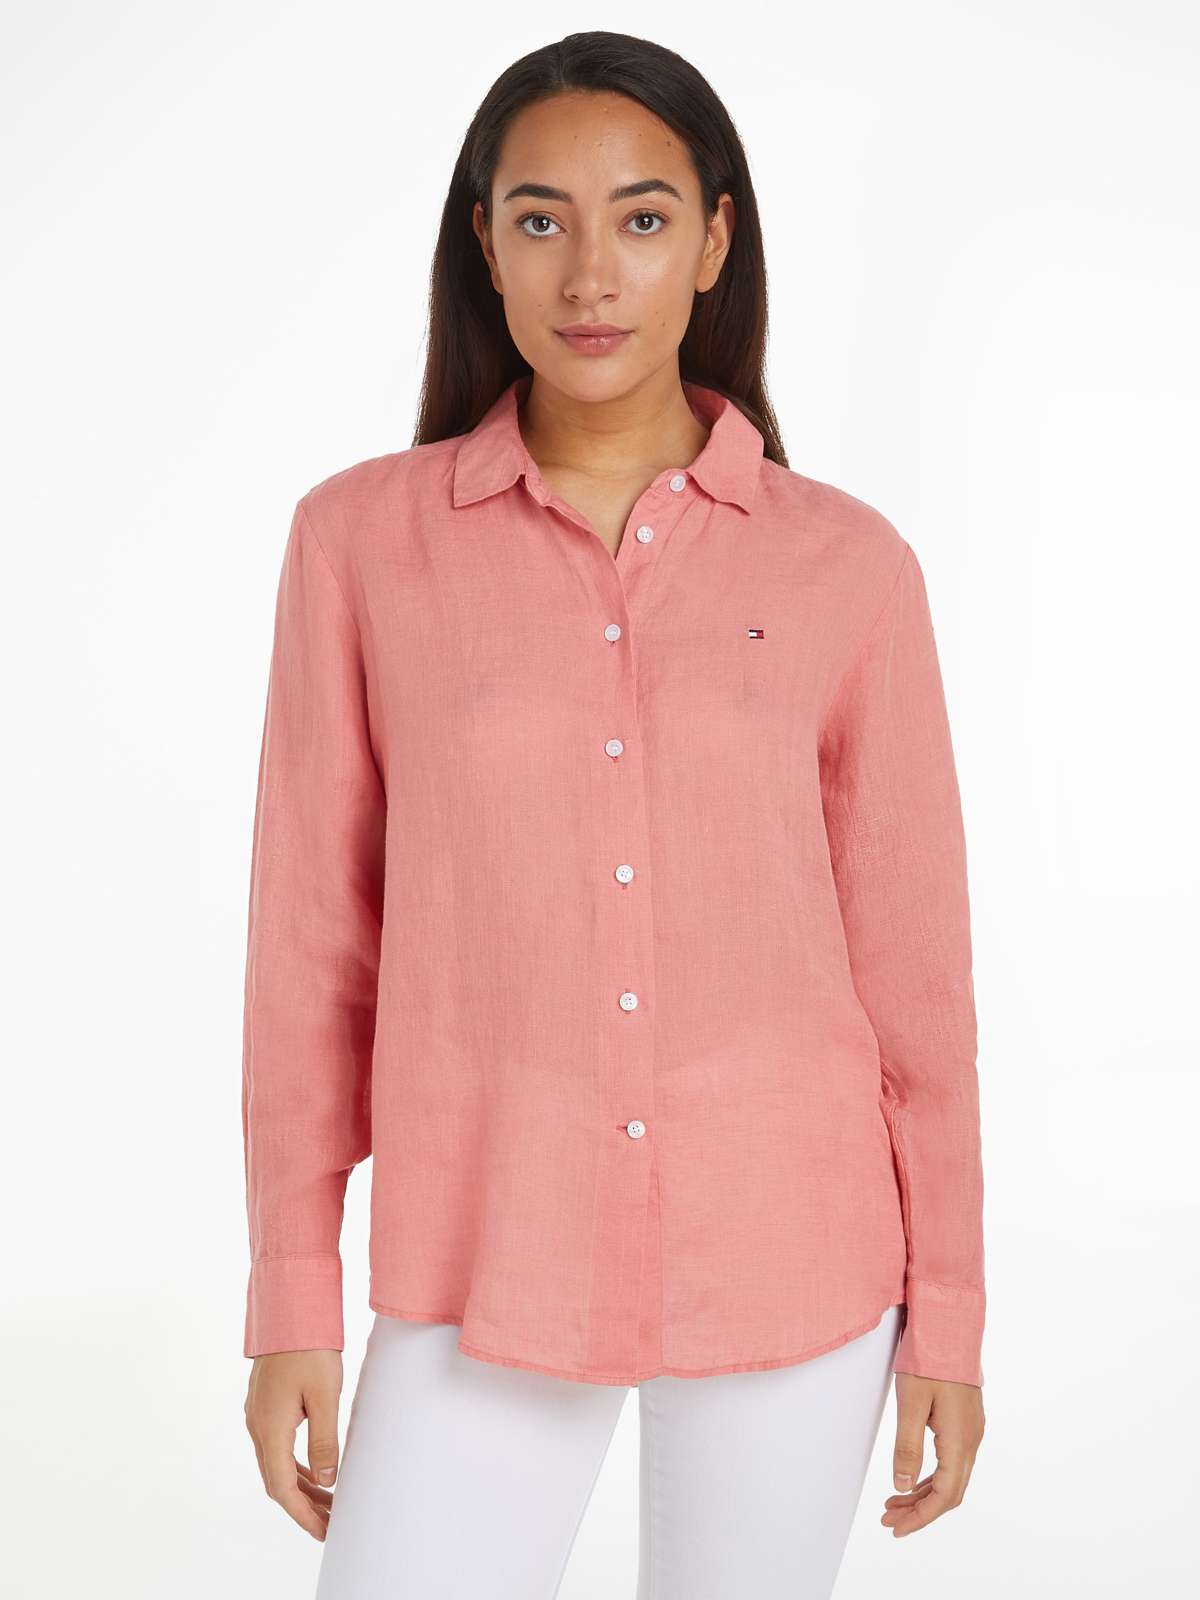 Блузка-рубашка с вышитым логотипом на груди